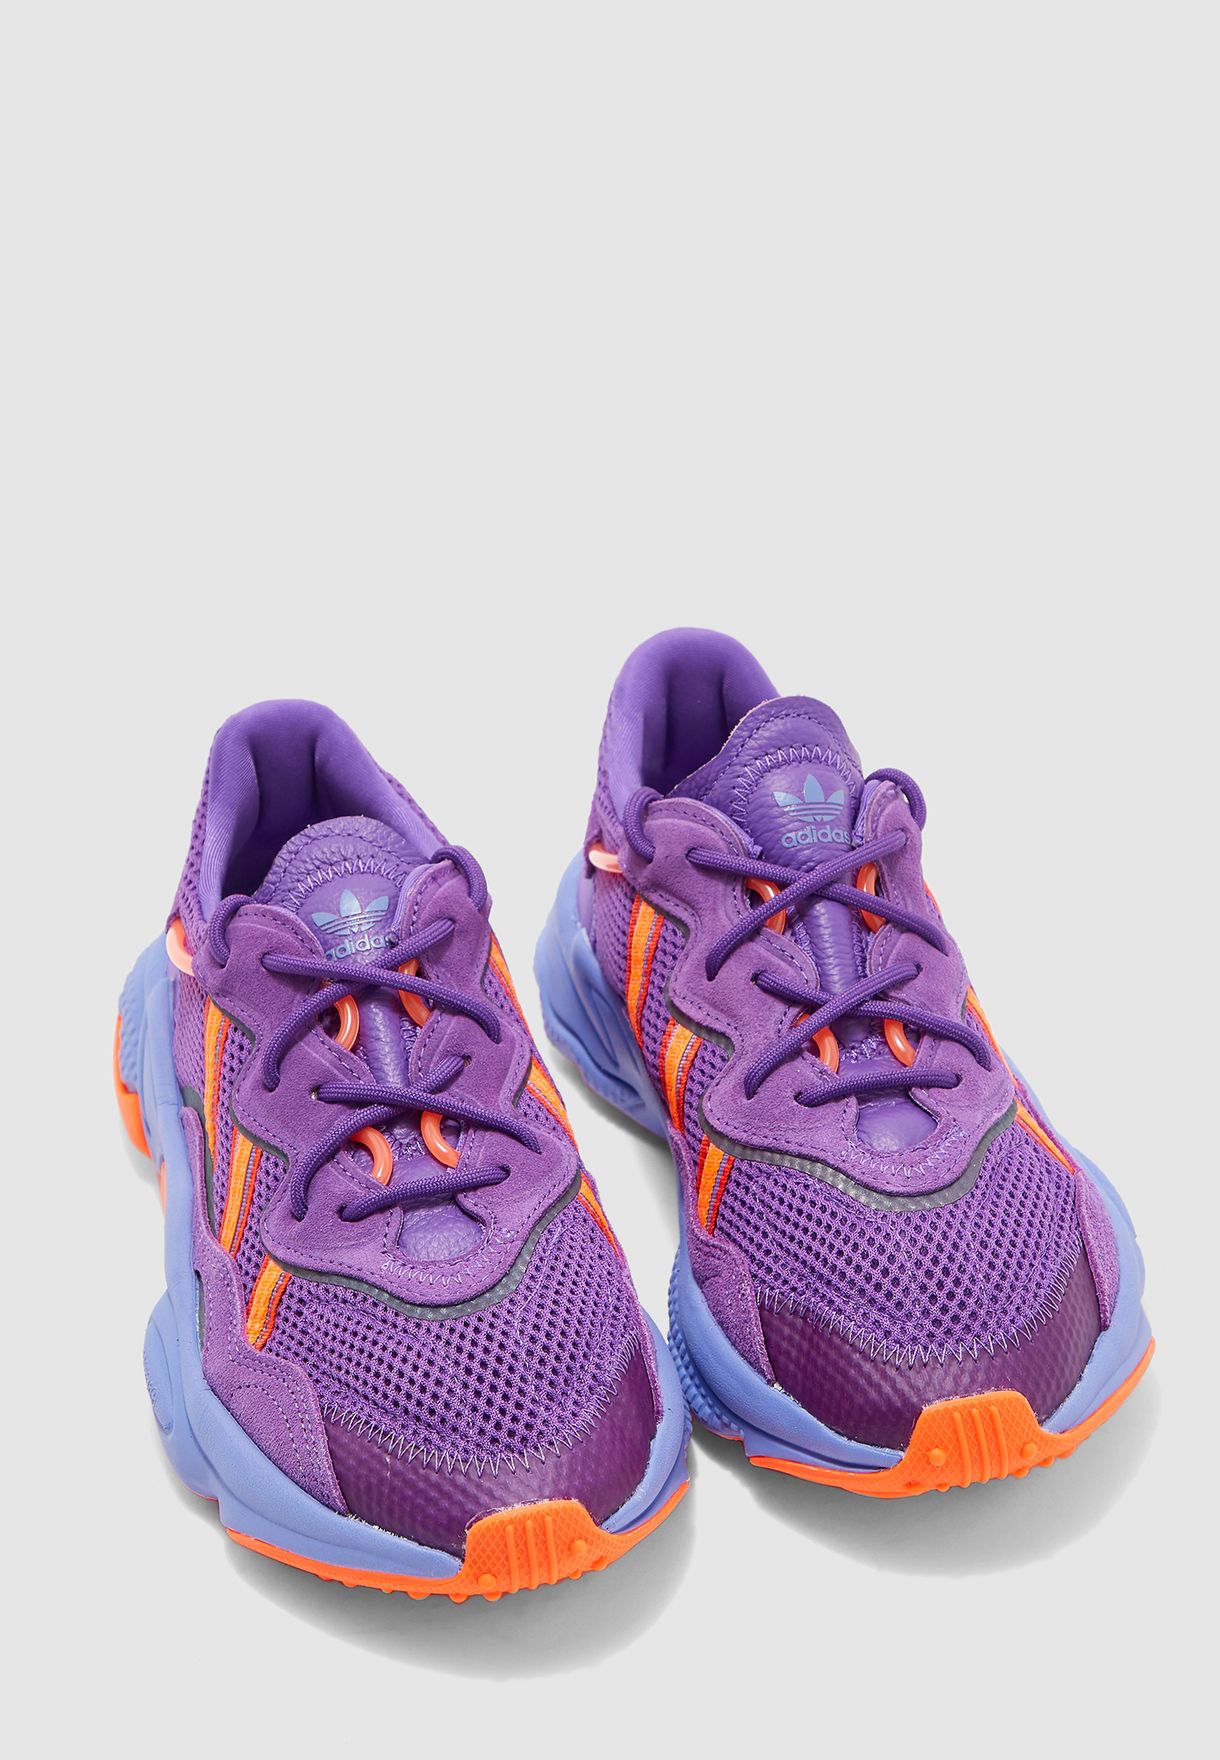 adidas originals ozweego purple